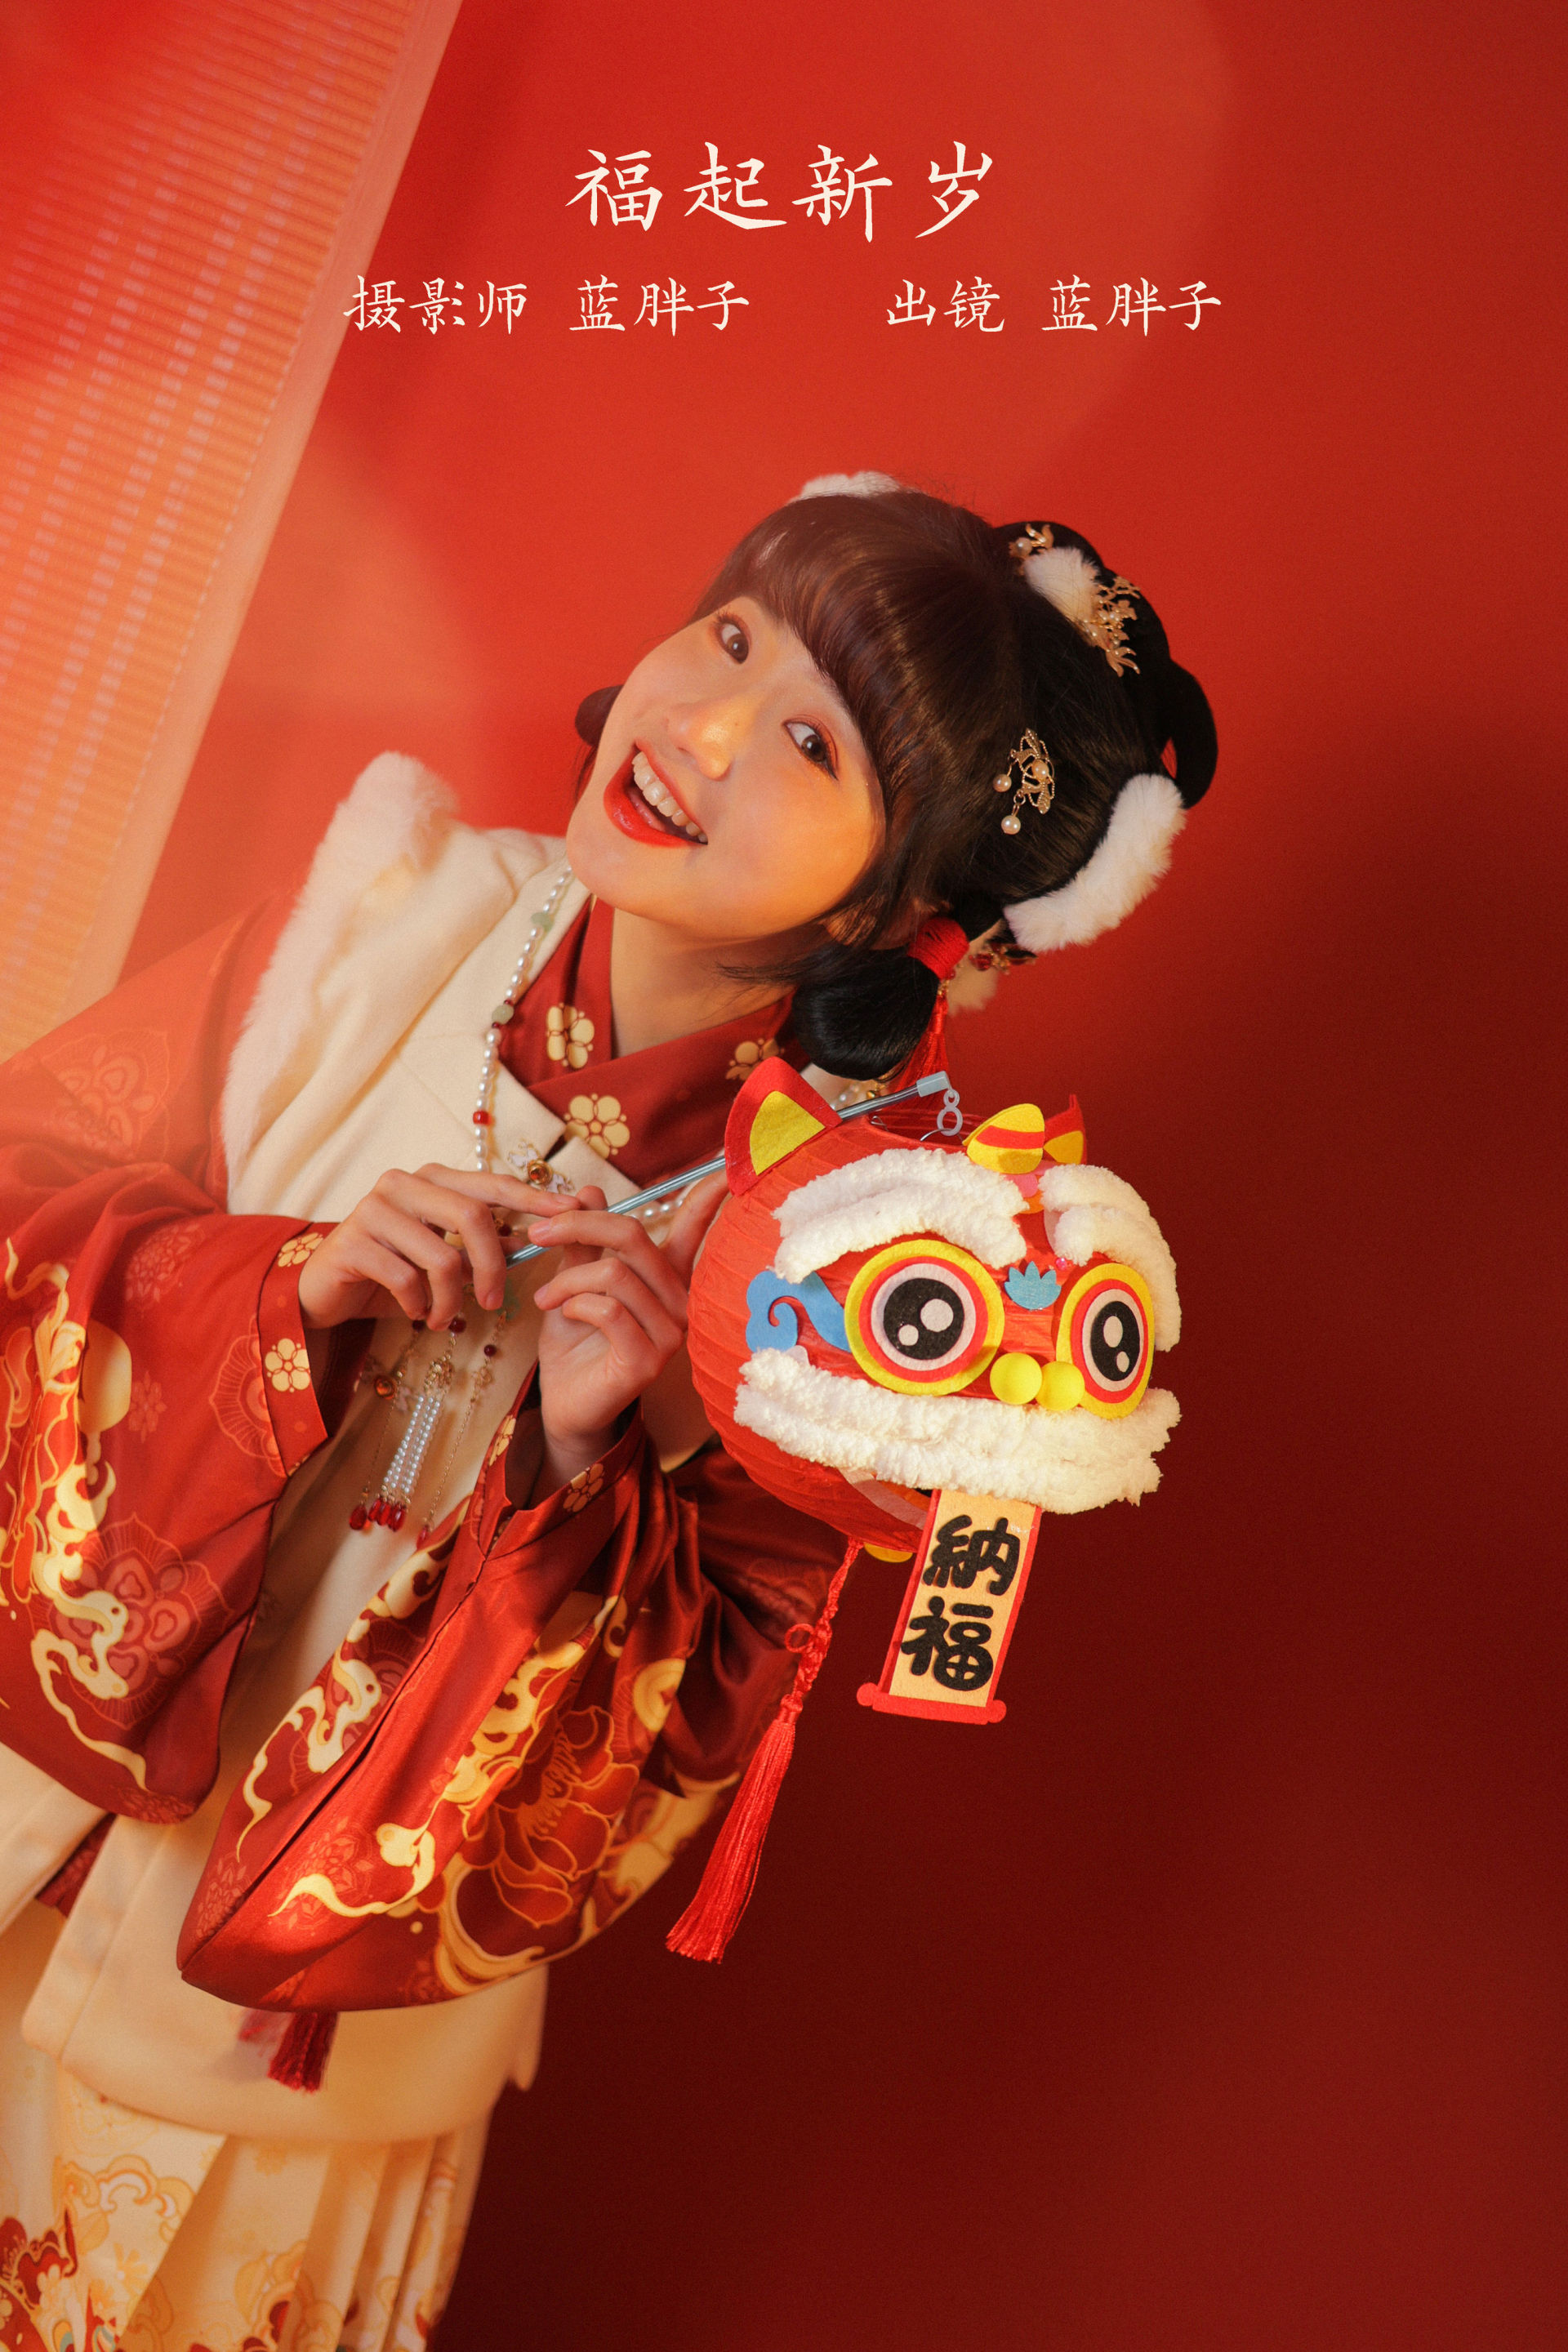 福起新岁 节日 新年 红色 可爱 中国风 古装